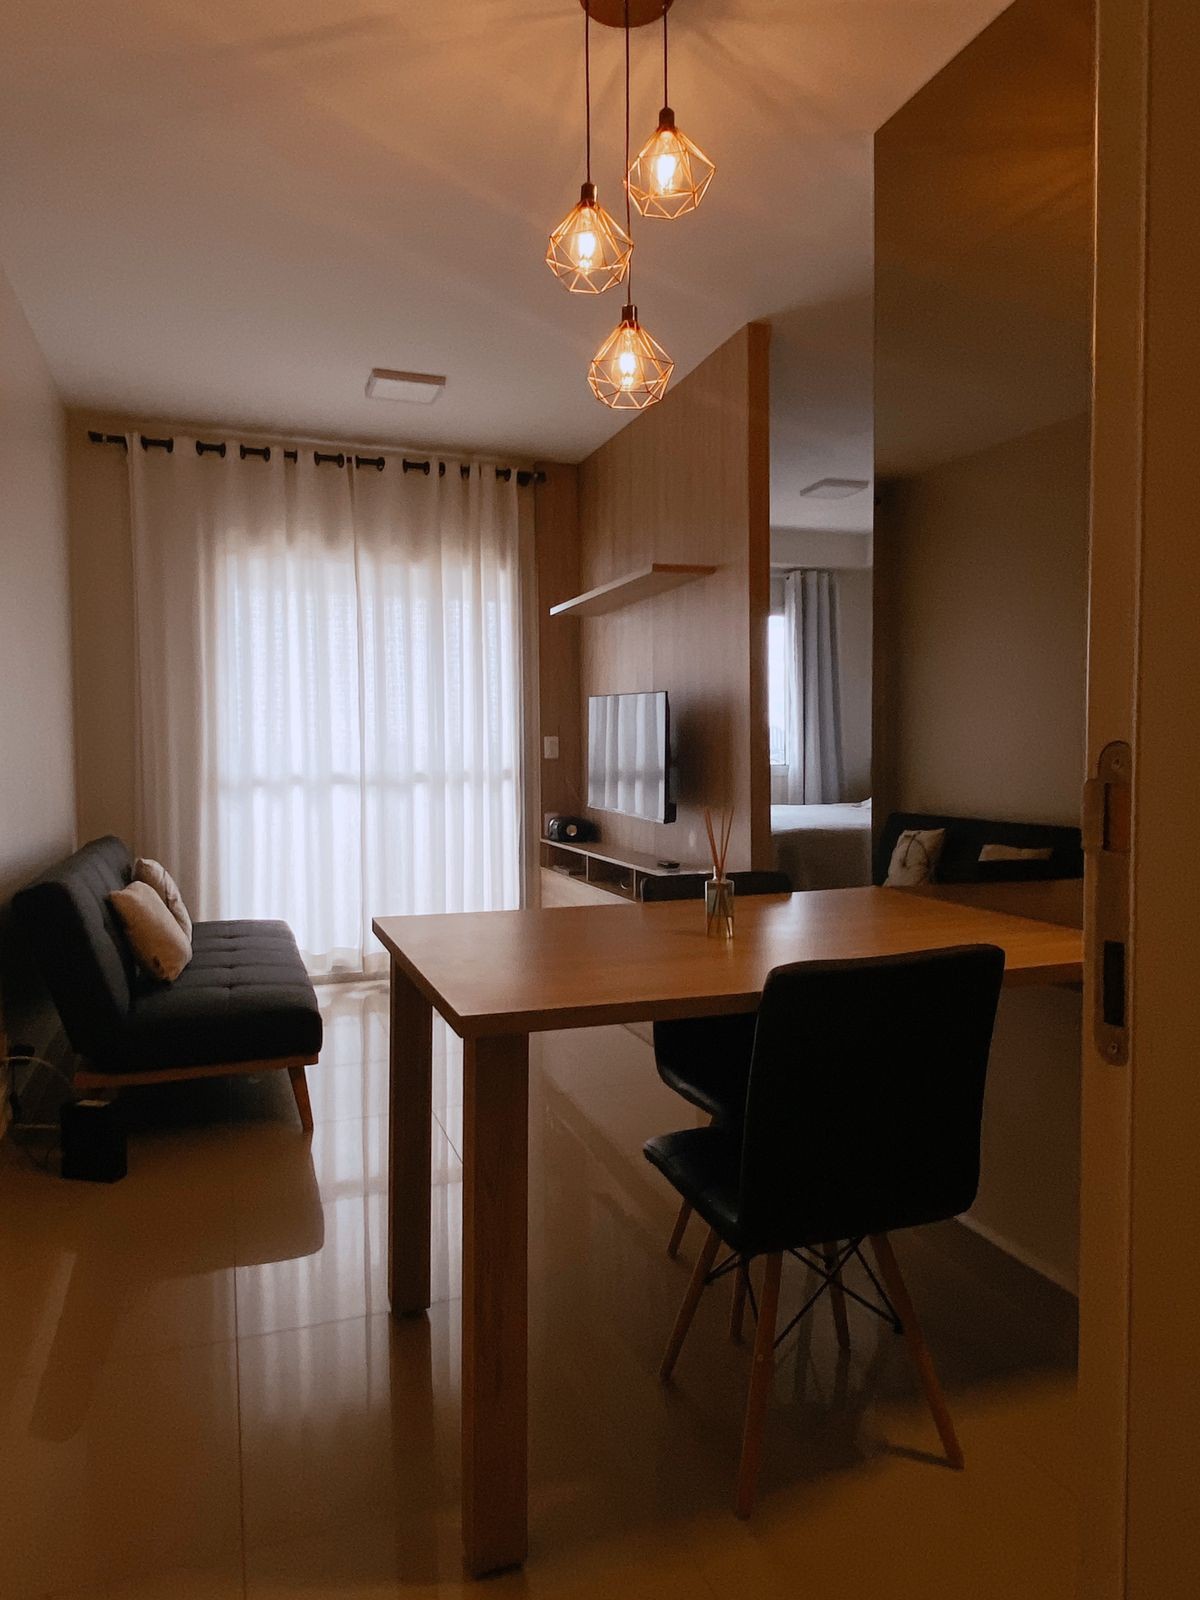 Apartamento aconchegante e prático em Ribeirão